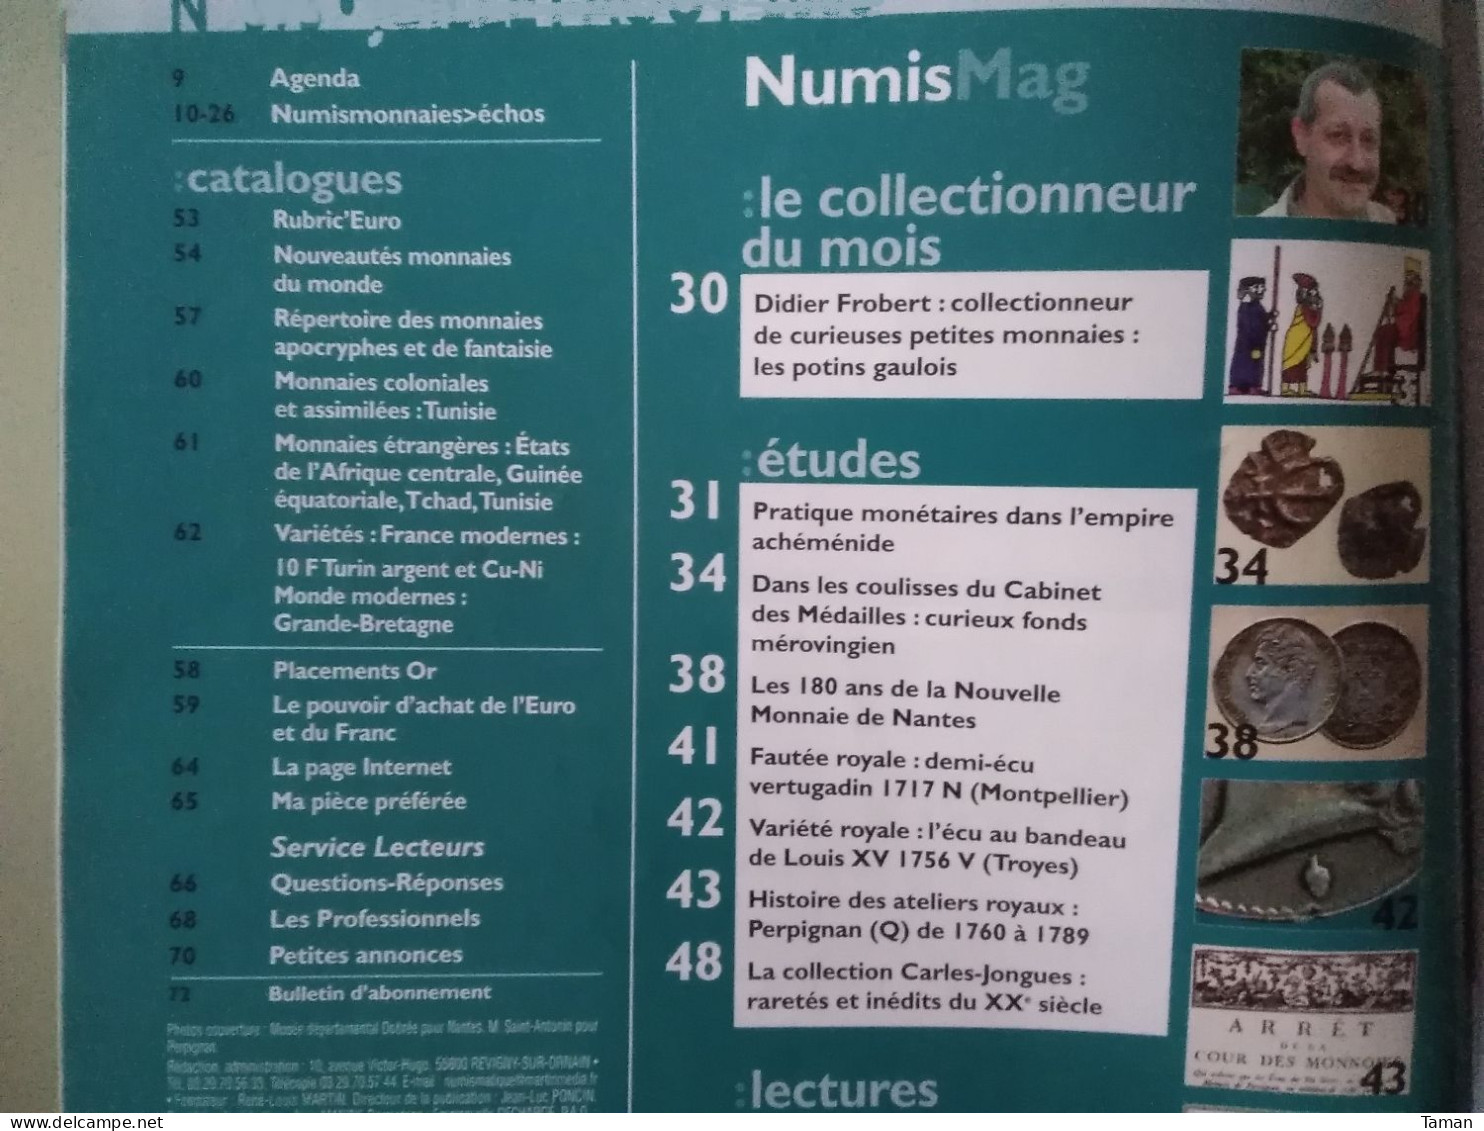 Numismatique & Change - Potins Gaulois - L'empire Achéménide - Mérovingien - Nantes - Perpignan Atelier Q - Französisch